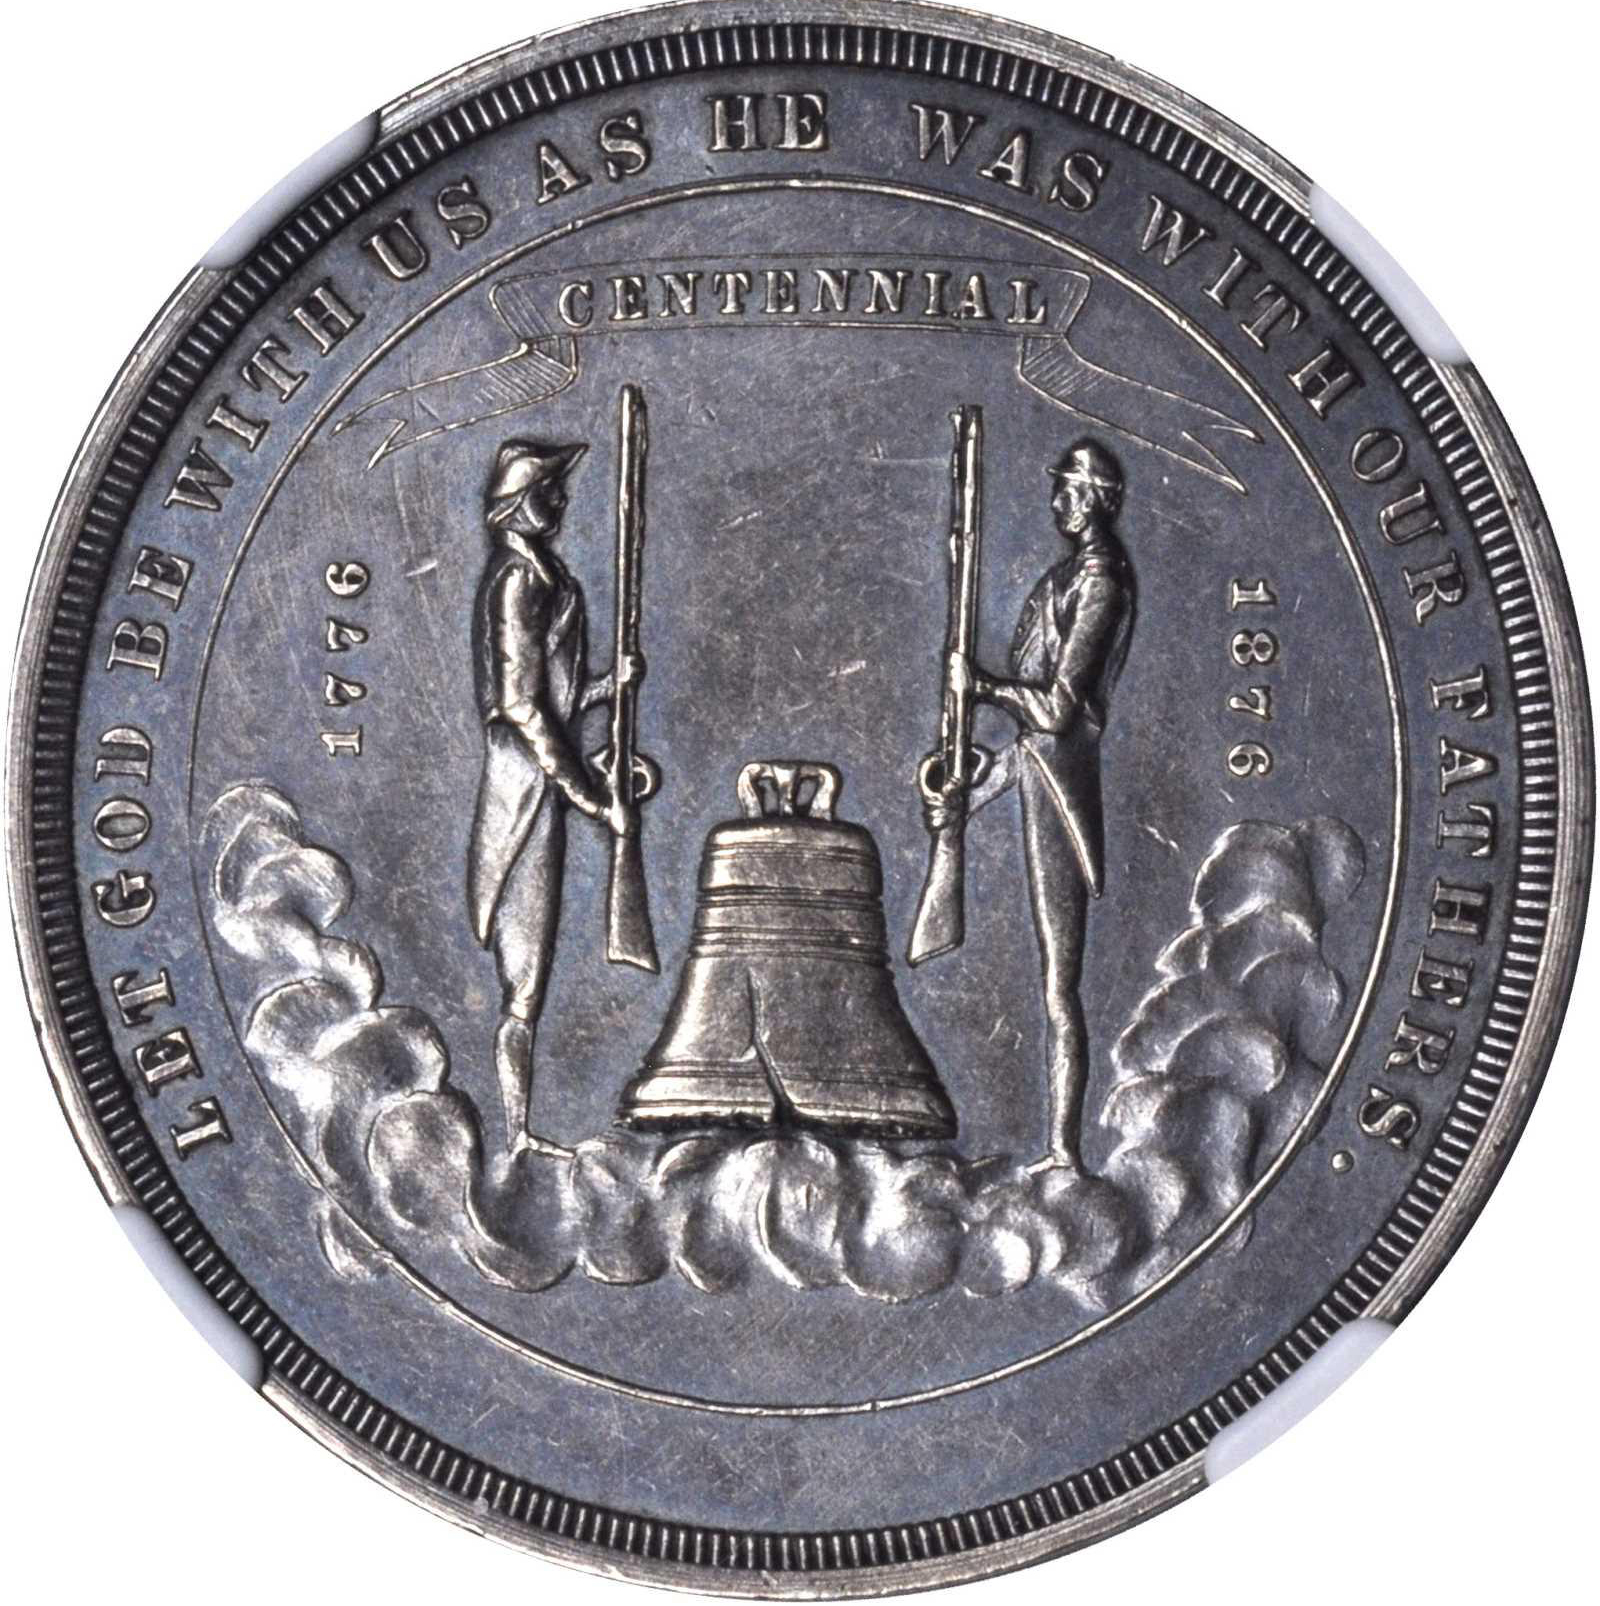 U.S. Centennial Exposition Nevada Silver Dollar